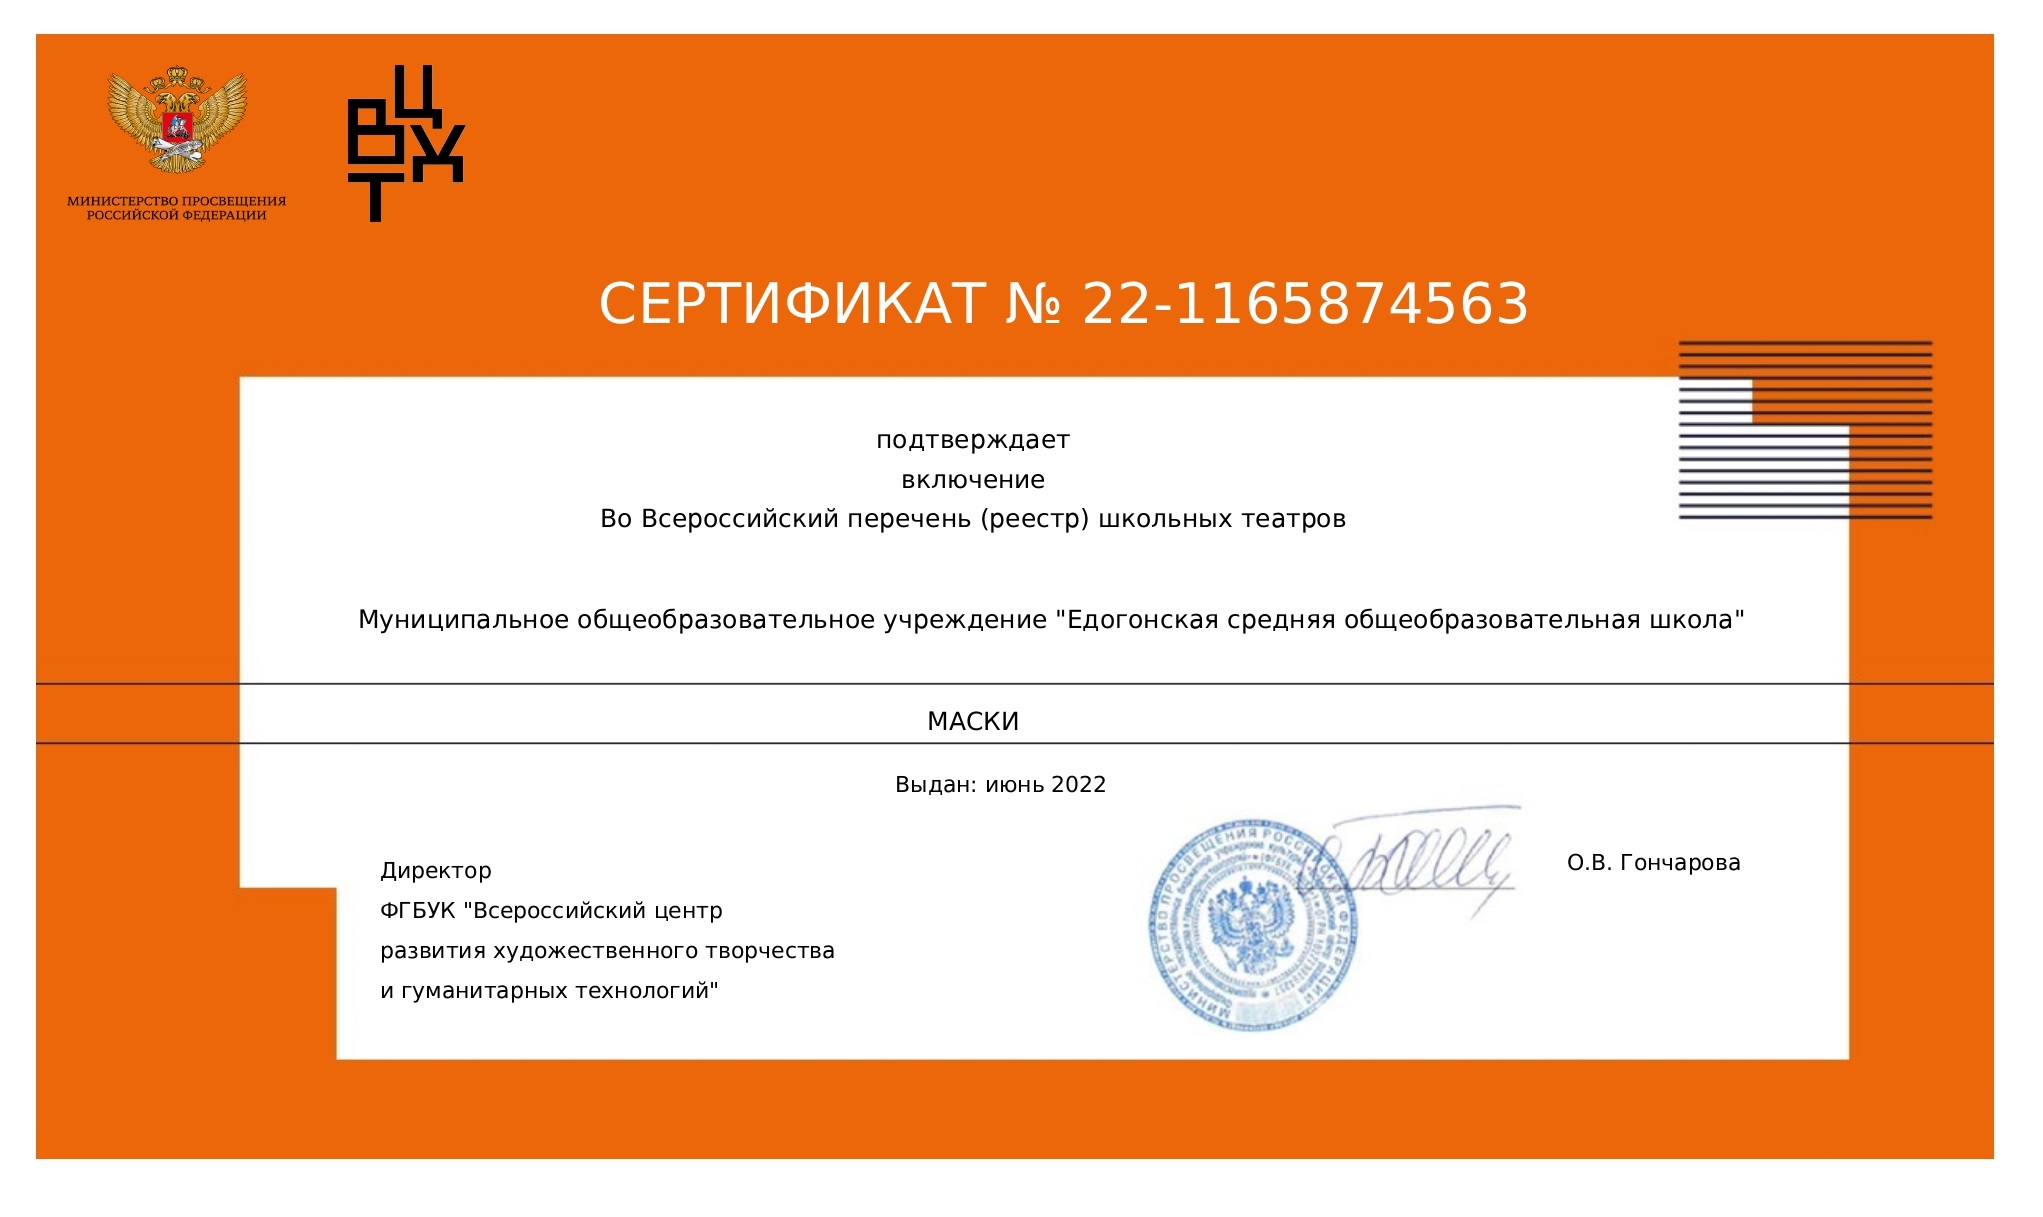 Сертификат о включении МОУ &amp;quot; Едогонская СОШ&amp;quot; во Всероссийский  реестр театров.